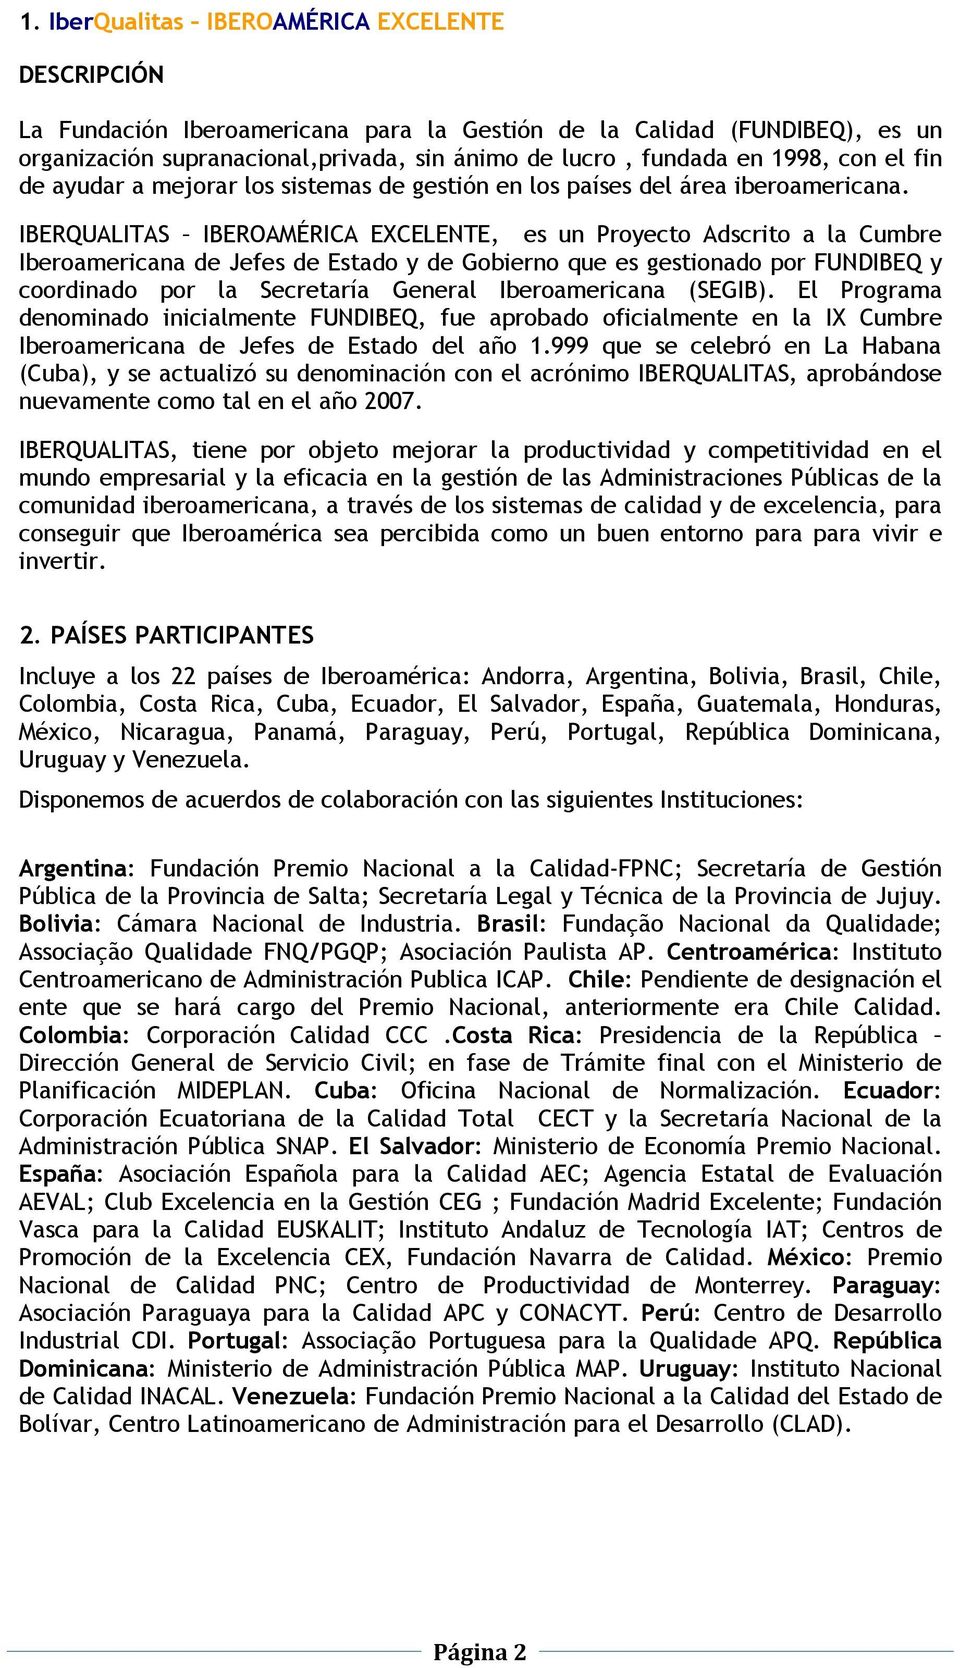 IBERQUALITAS IBEROAMÉRICA EXCELENTE, es un Proyecto Adscrito a la Cumbre Iberoamericana de Jefes de Estado y de Gobierno que es gestionado por FUNDIBEQ y coordinado por la Secretaría General